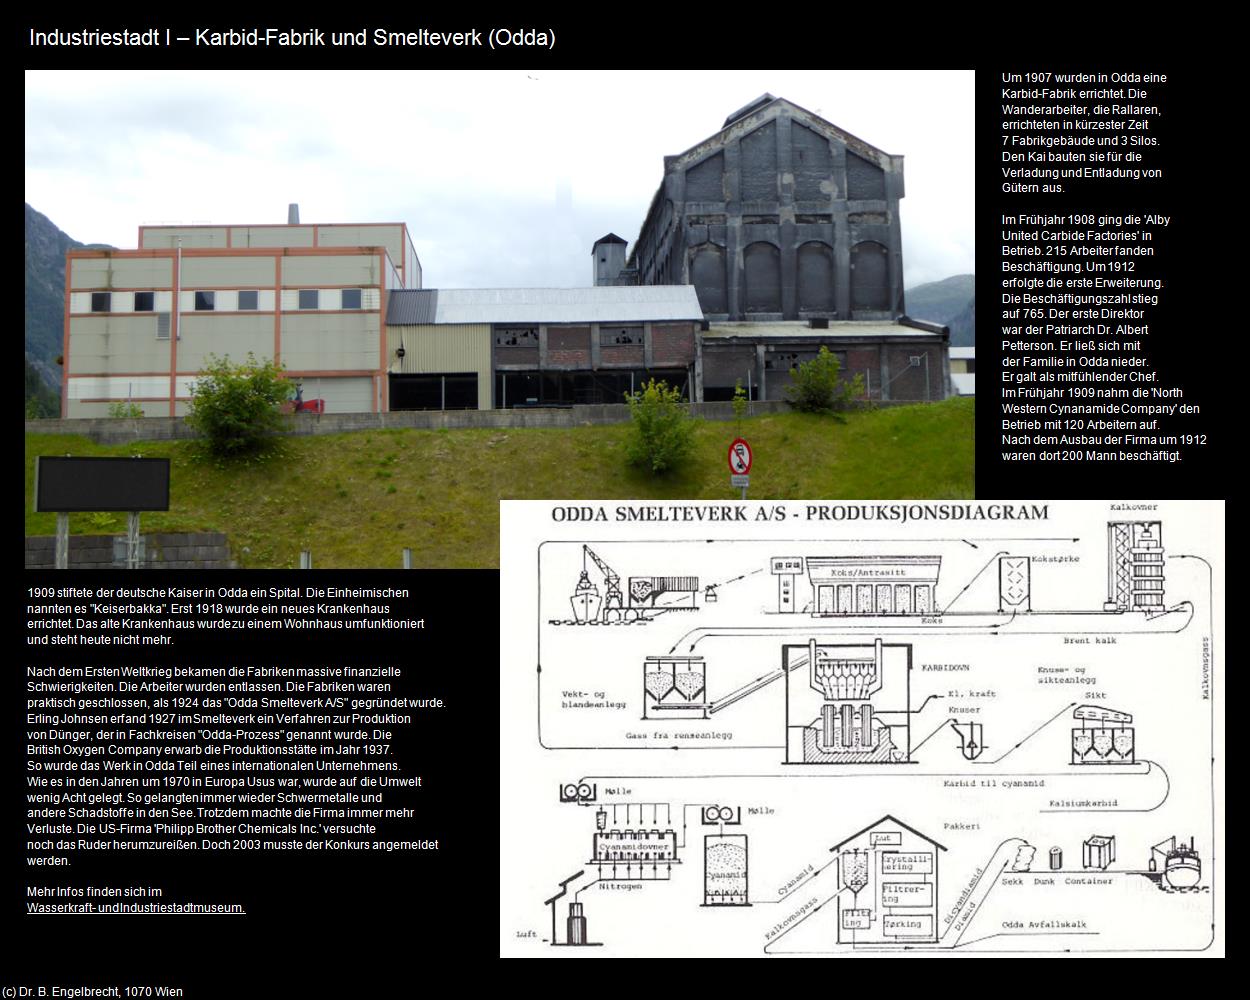 Karbid-Fabrik und Smelteverk (Odda) in Kulturatlas-NORWEGEN(c)B.Engelbrecht